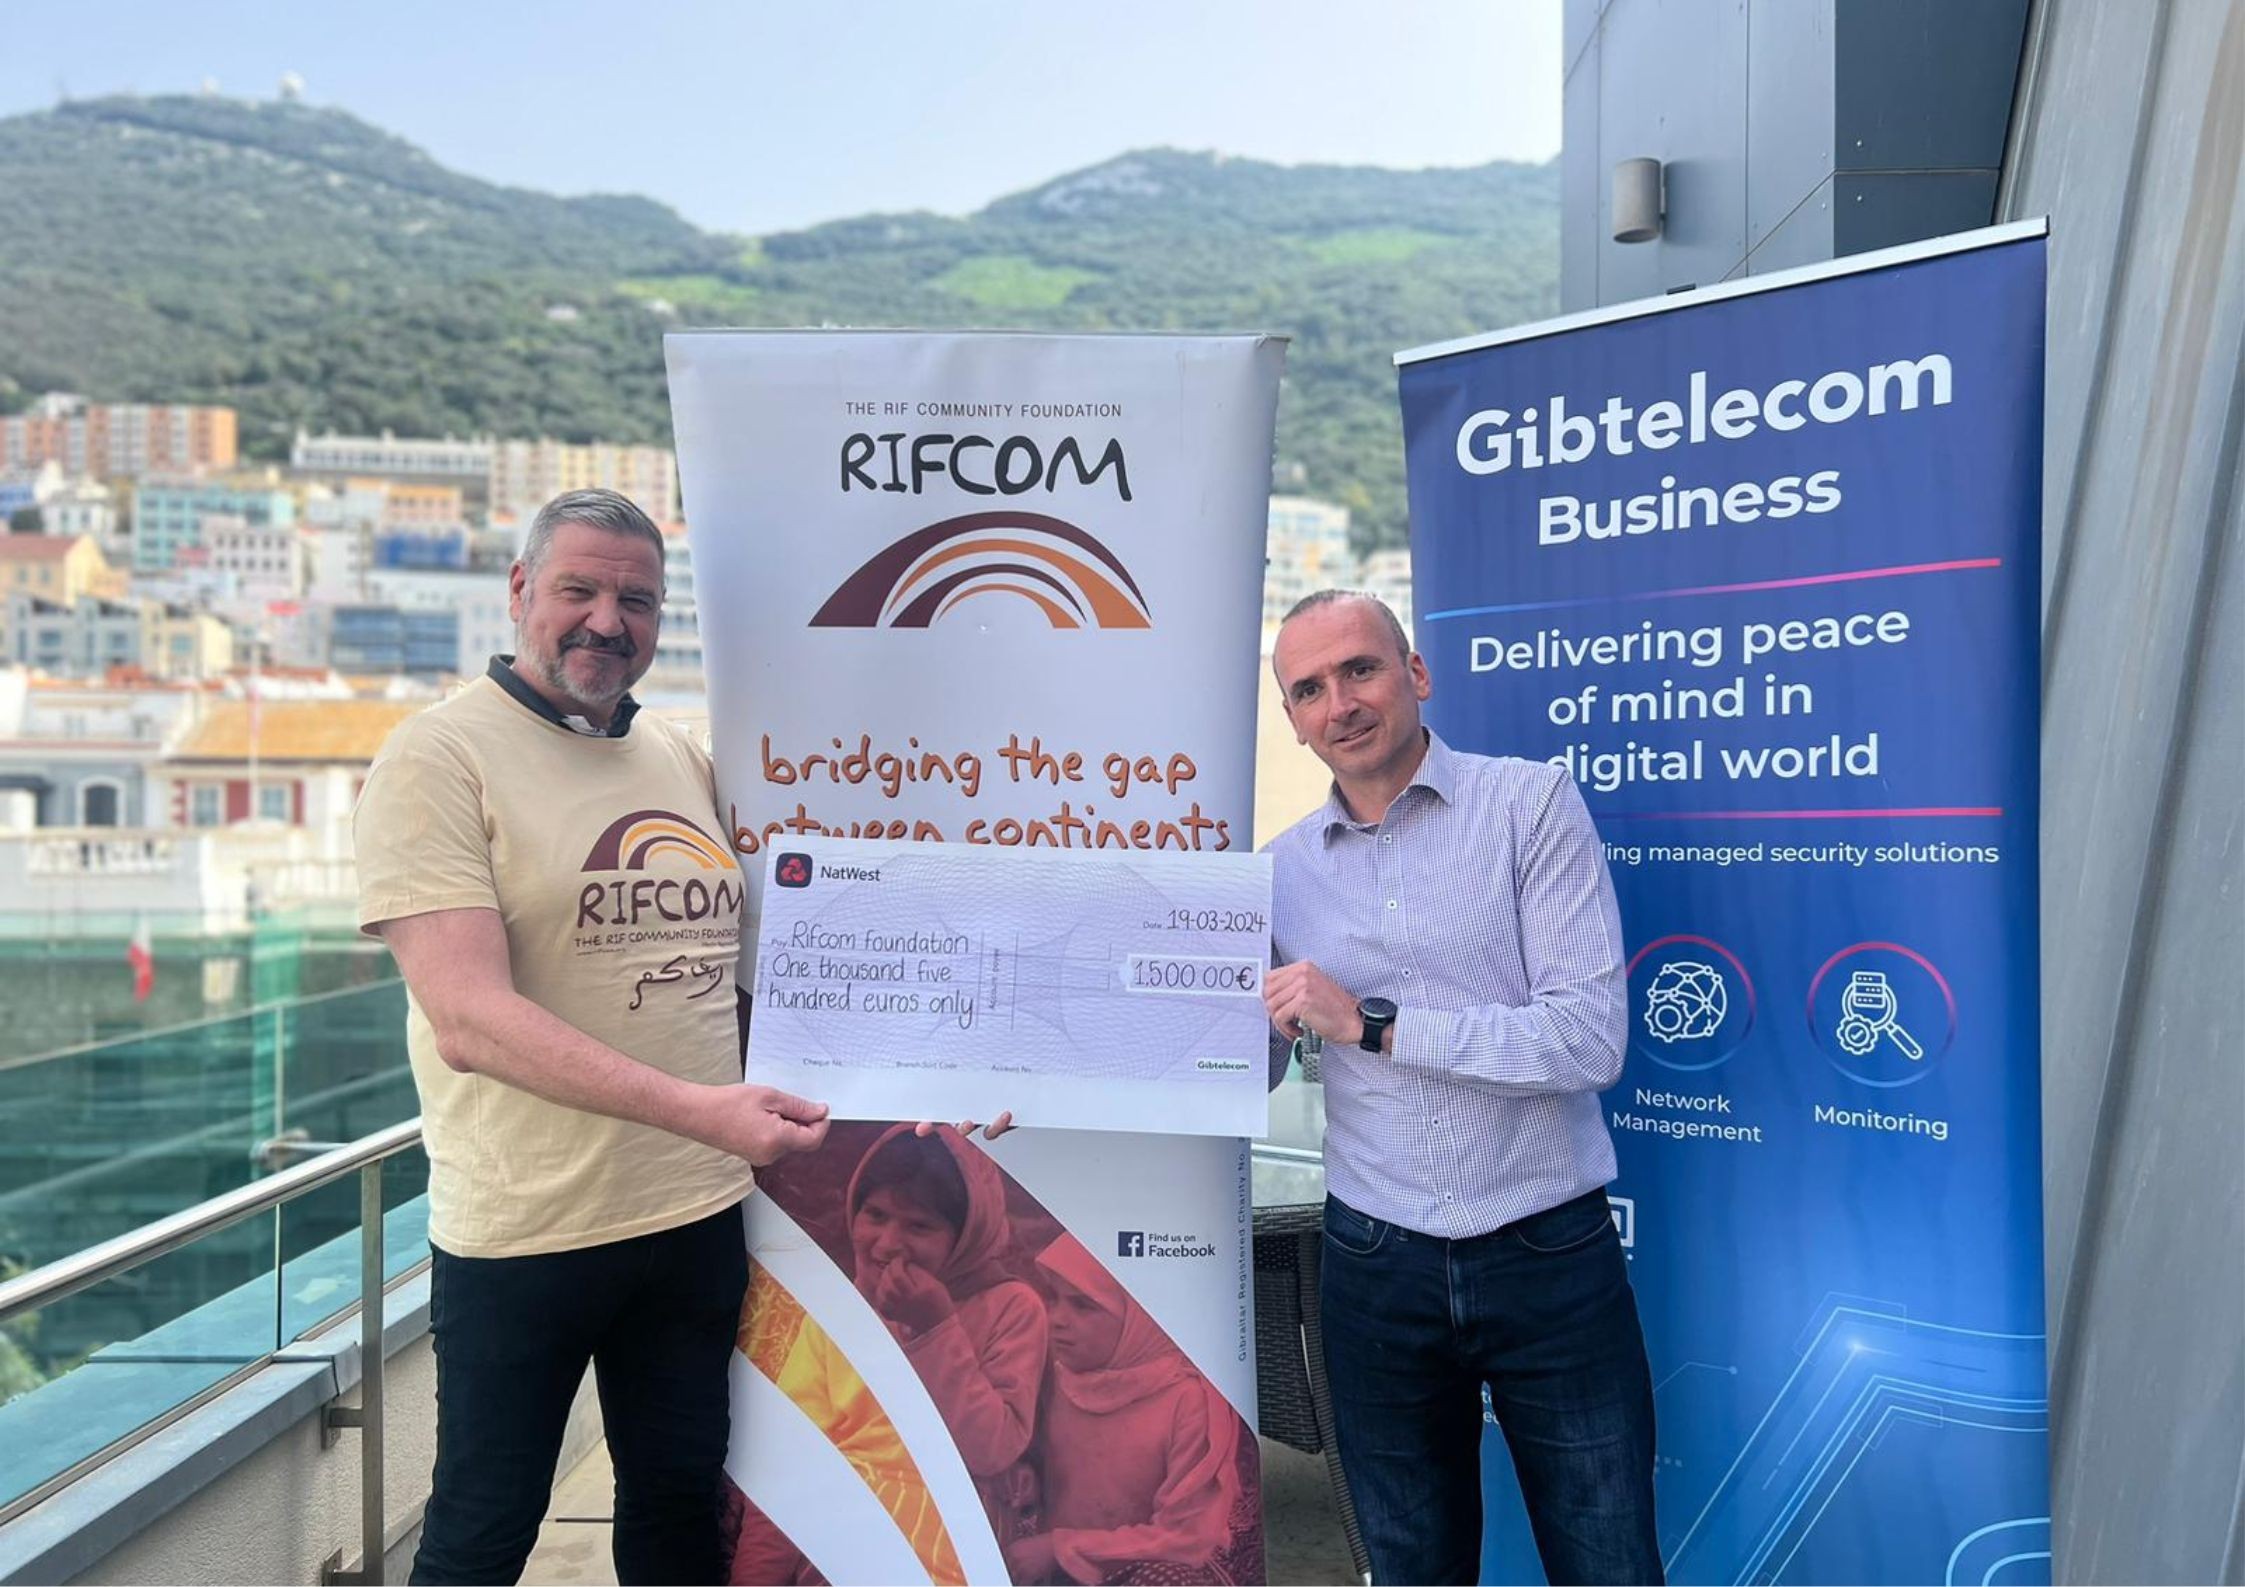 Gibtelecom Corporate Golf Day held at La Reserva de Sotogrande raises €1,500 for Rifcom Foundation Image